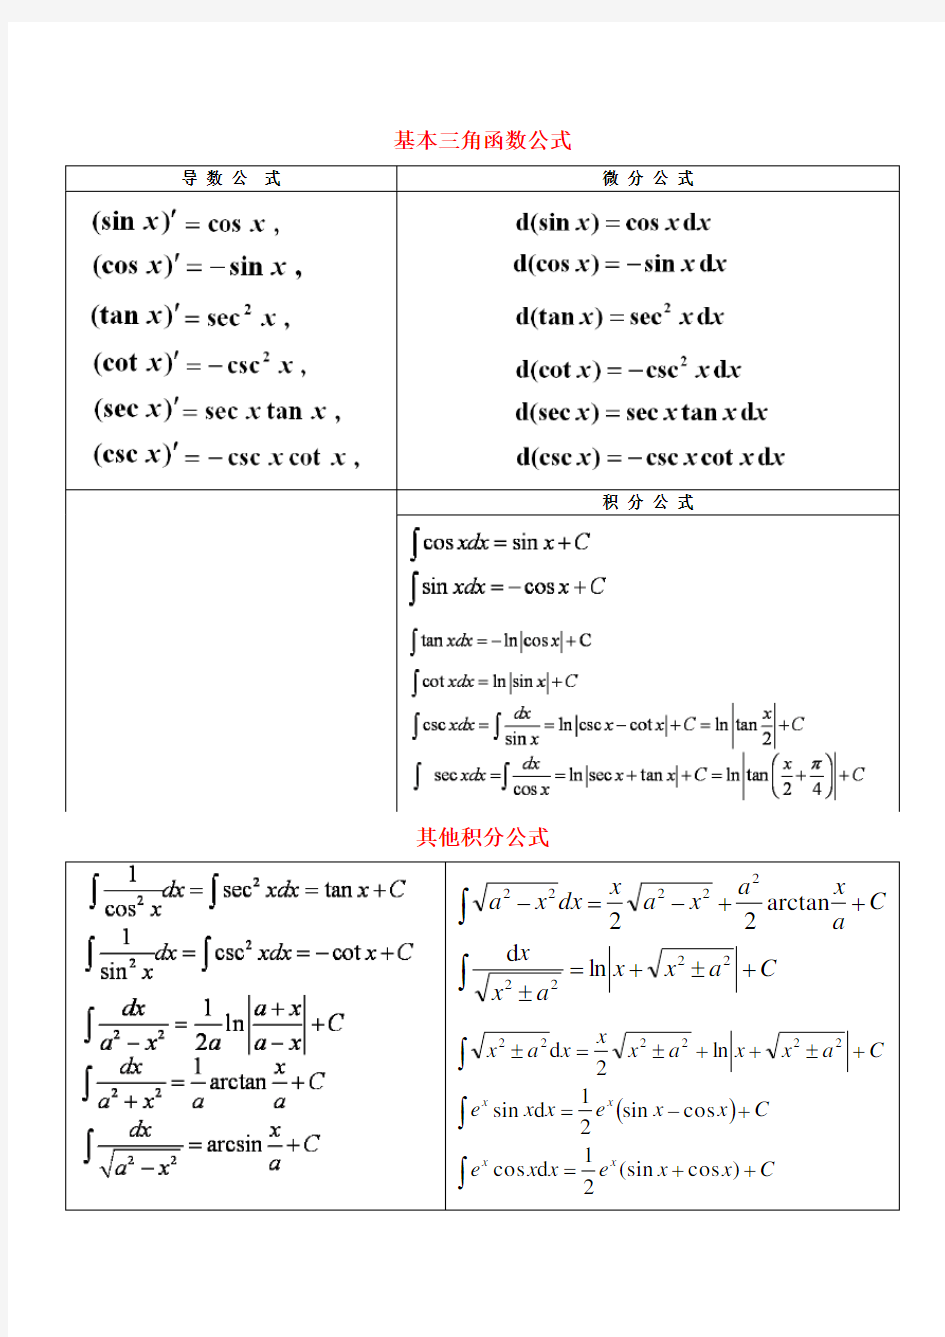 导数公式、微分公式和积分公式